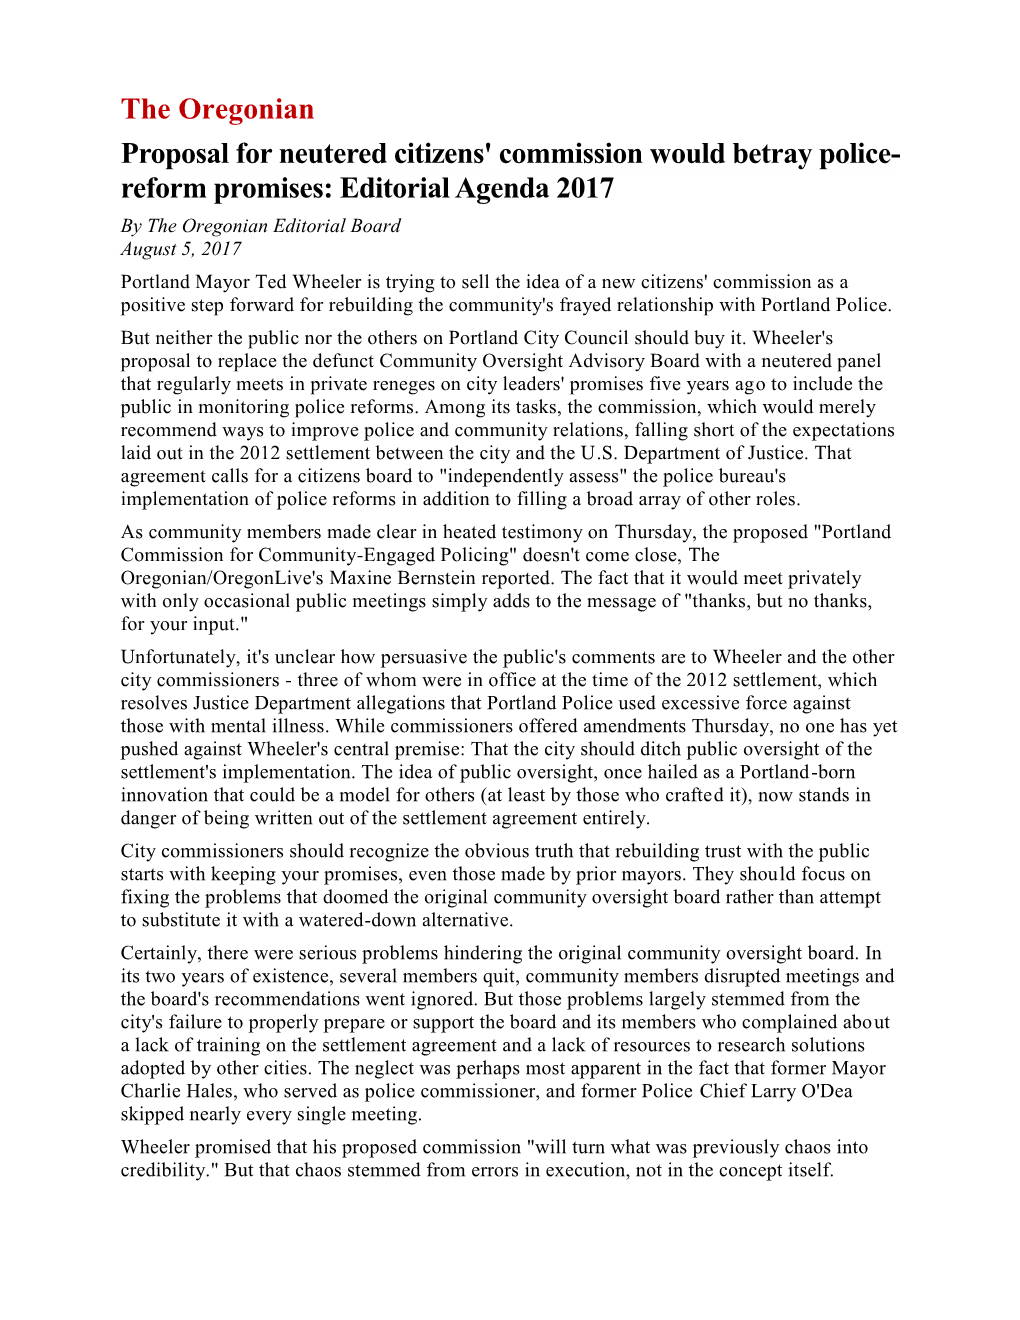 Reform Promises: Editorial Agenda 2017